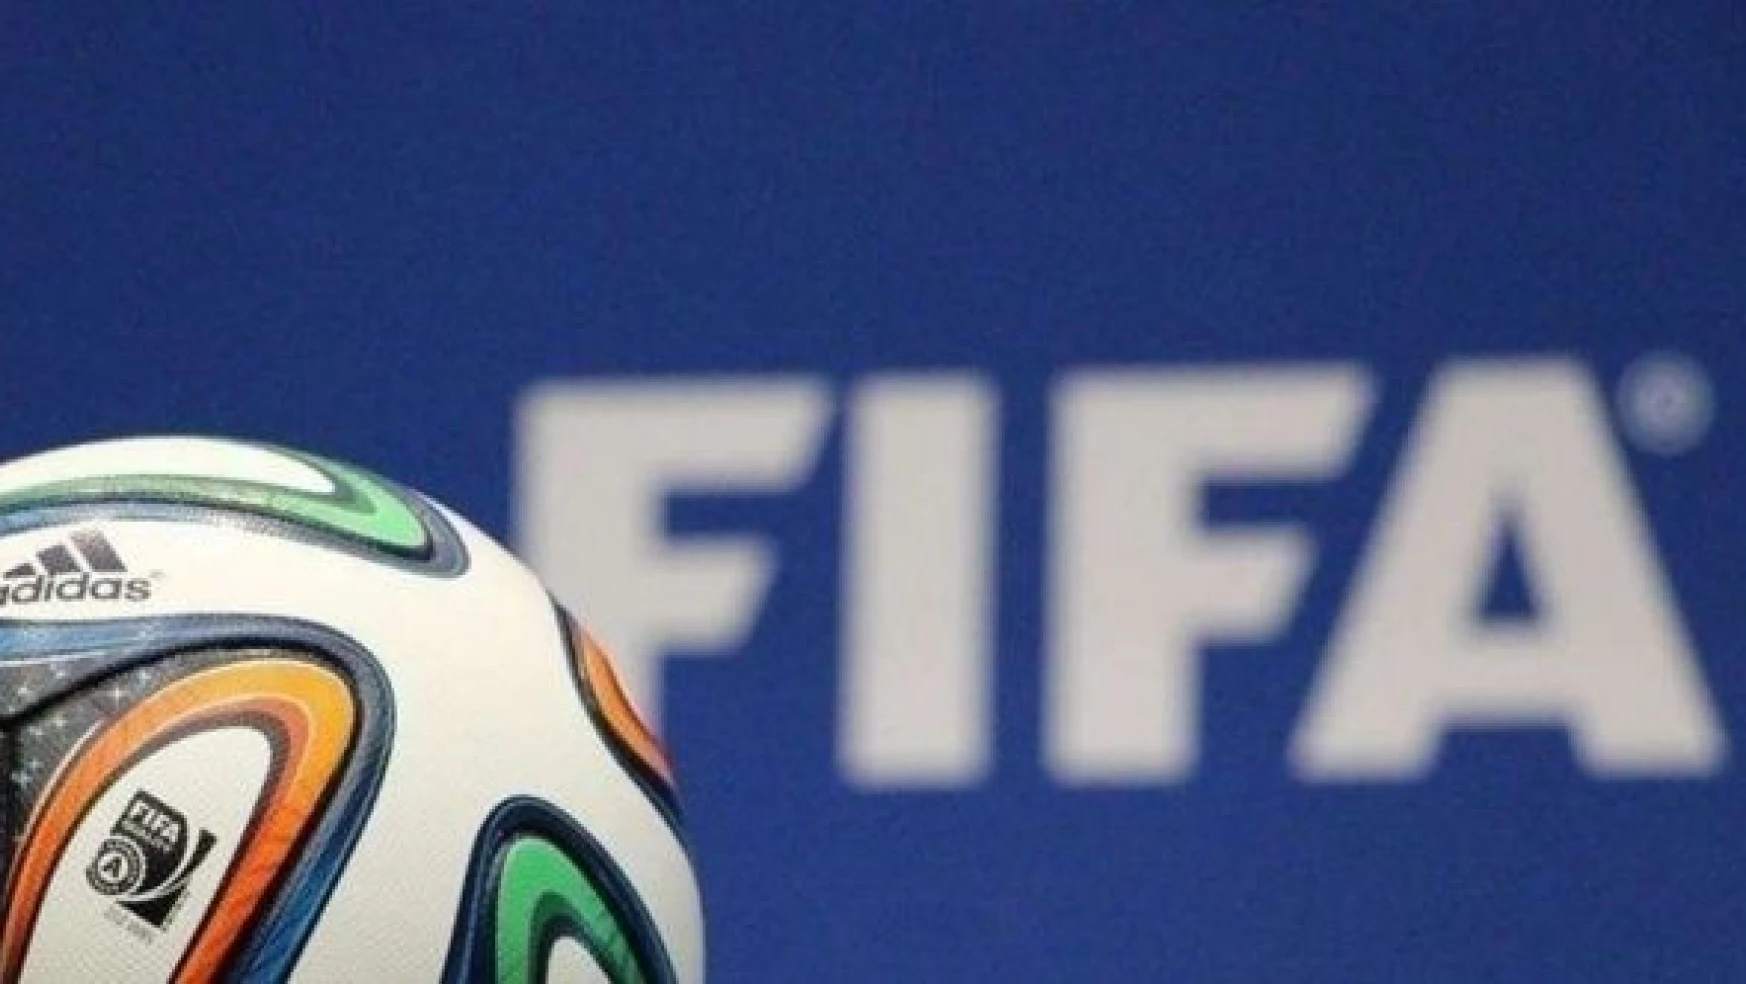 FIFA'dan Ukrayna'ya bir milyon dolar yardım